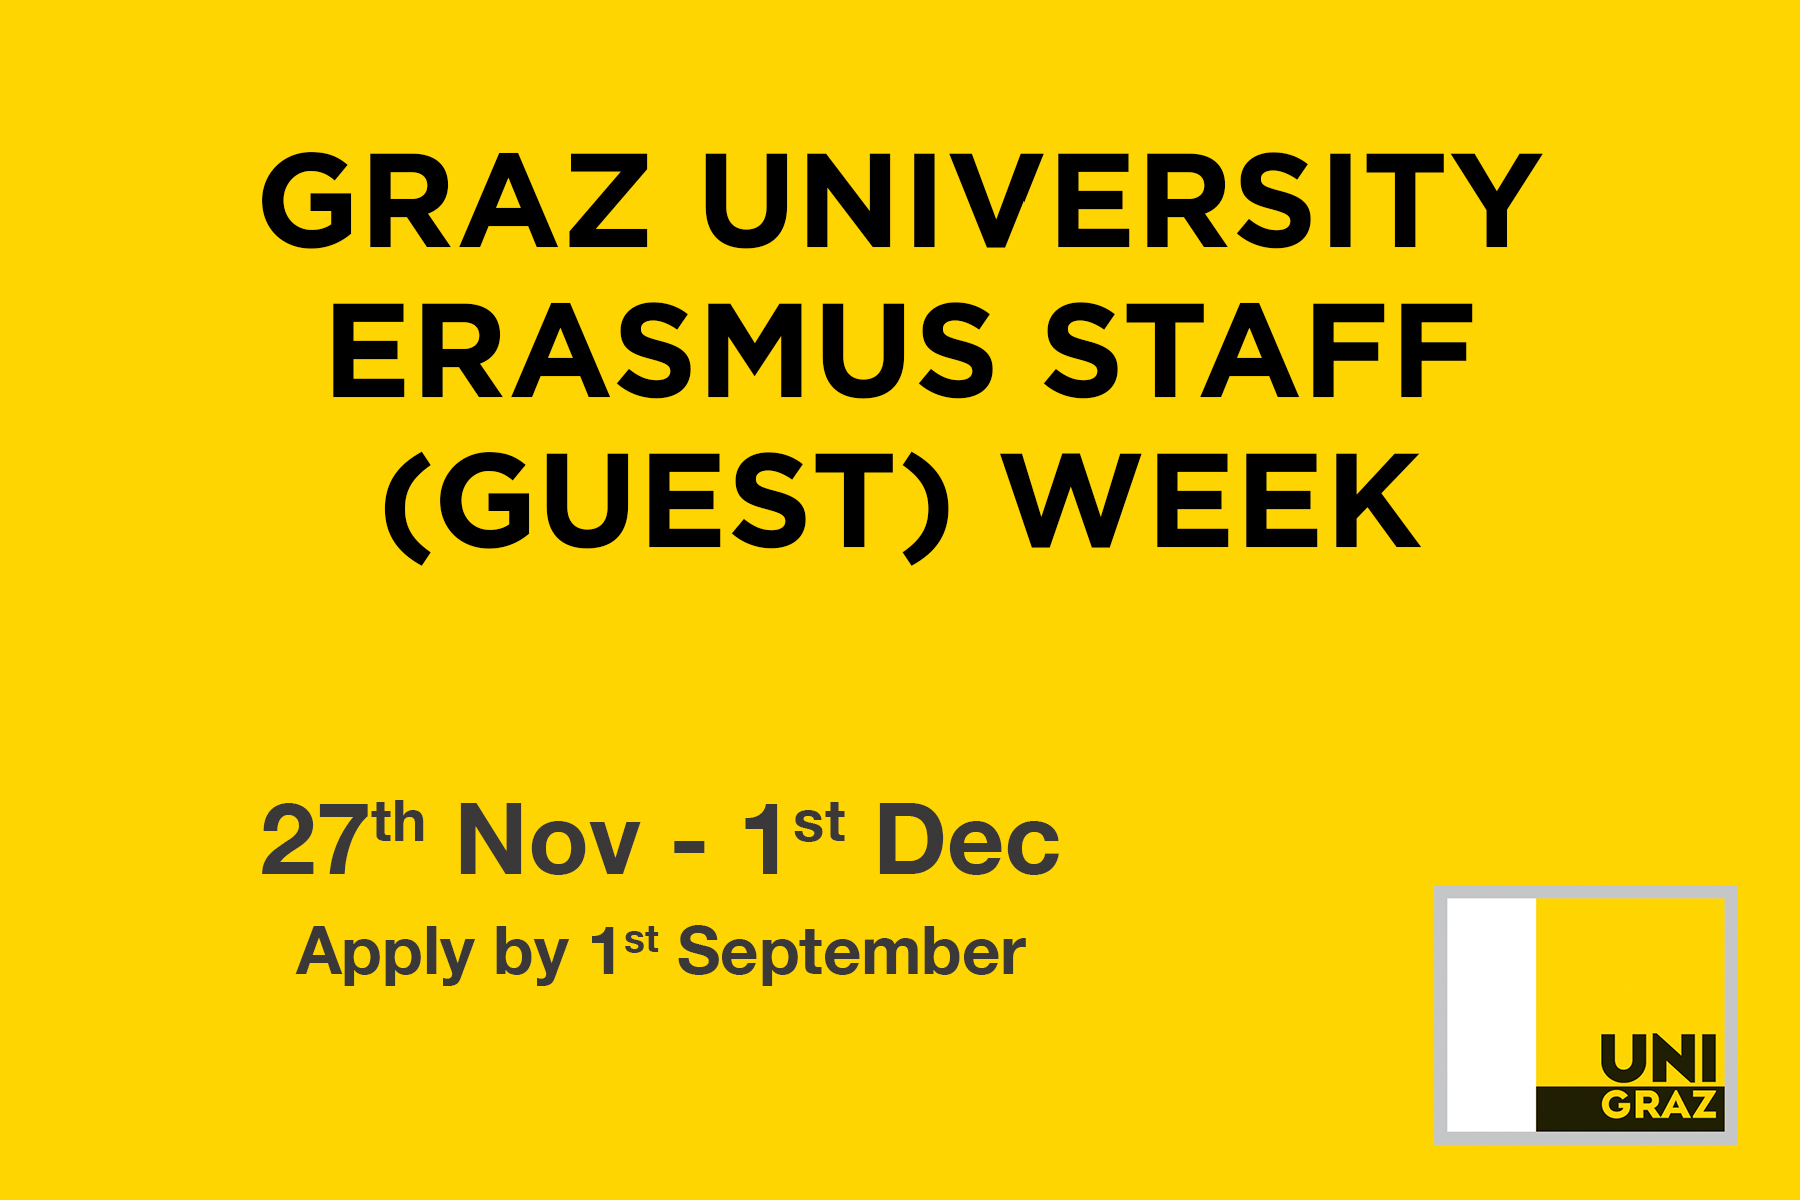 graz university erasmus staff week 